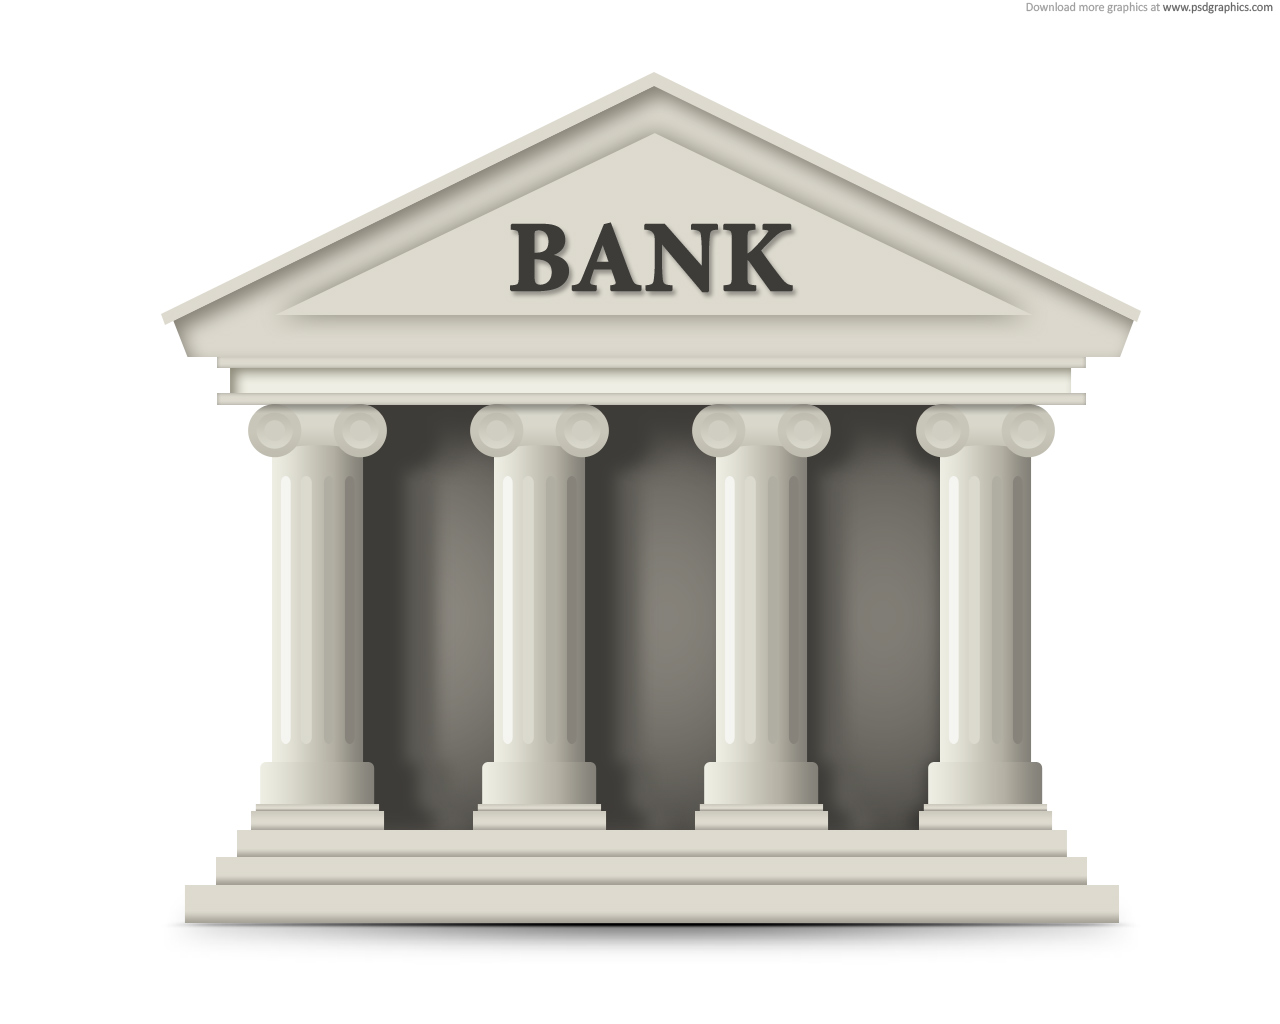 राष्ट्र बैंकले बैंक तथा वित्तीय संस्थामा साढे १ अर्ब लगानी गर्ने